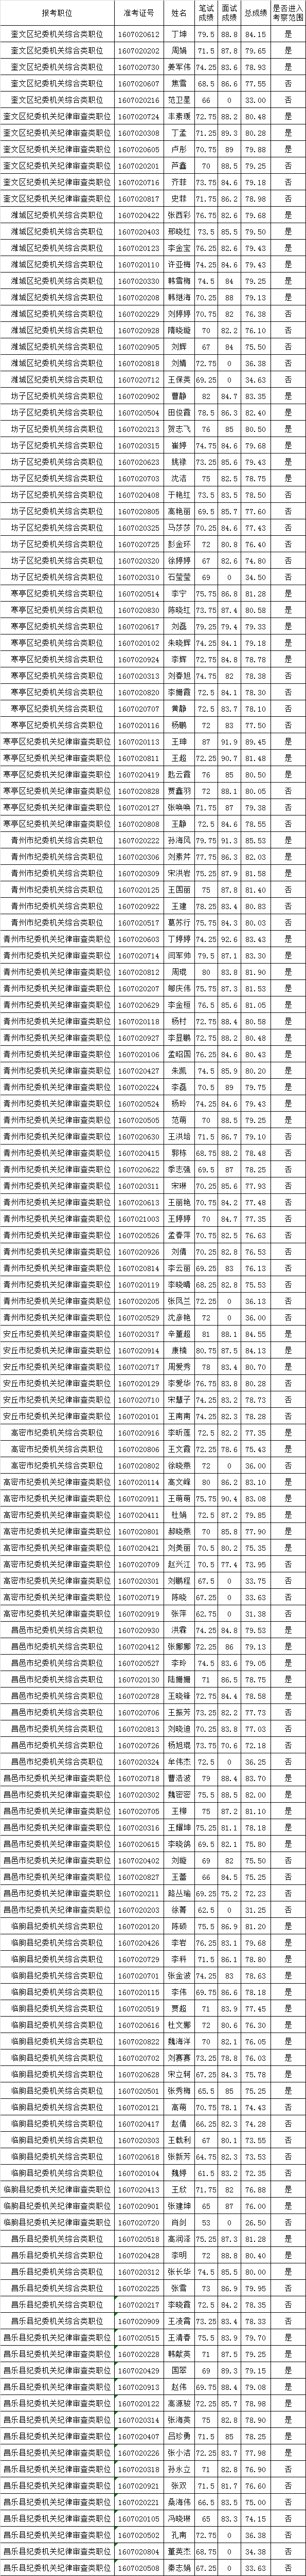 2016年潍坊市县级纪委机关竞争选拔工作人员考试总成绩及进入考察范围人员名单.png